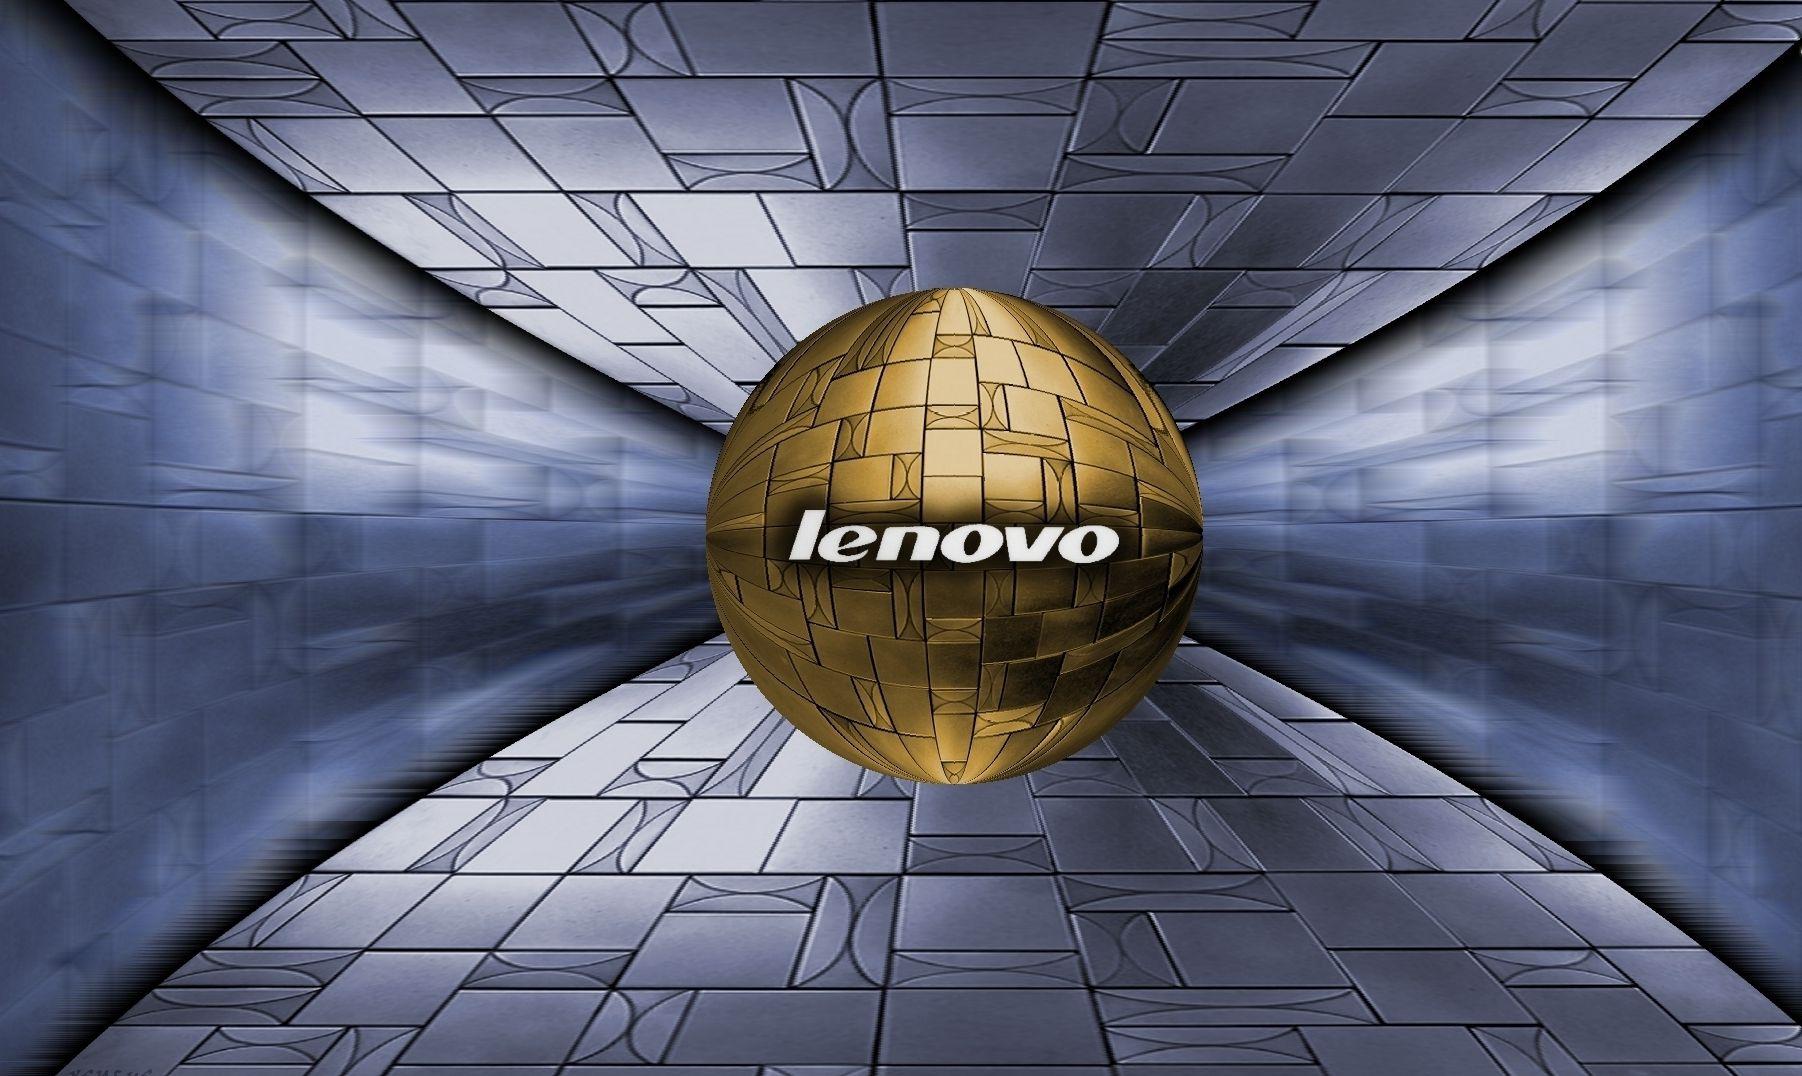 Lenovo Windows 7 Wallpapers Group